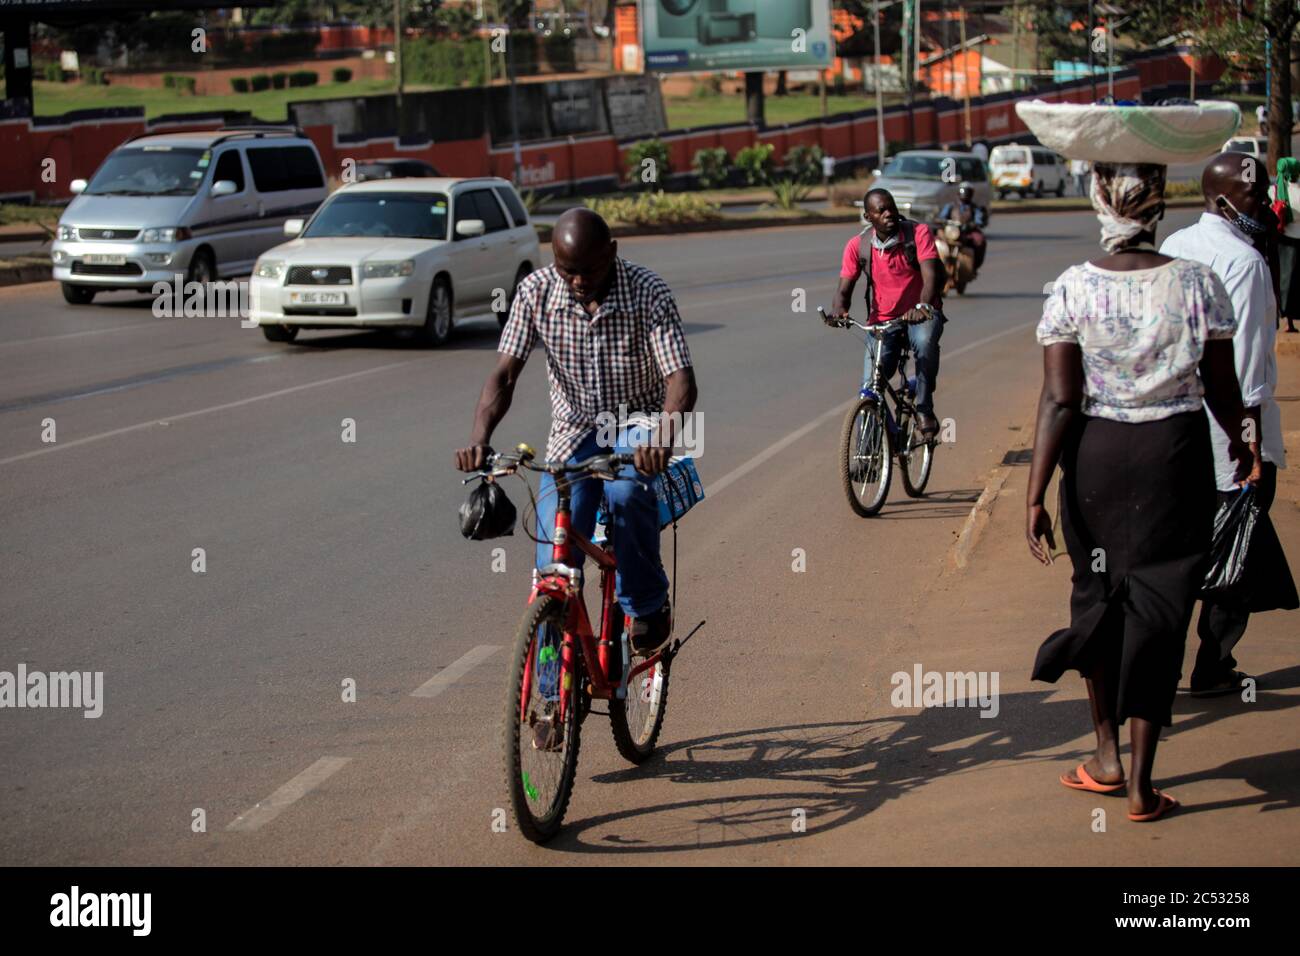 Kampala, Ouganda. 30 juin 2020. Les gens font du vélo le long d'une route à Kampala, capitale de l'Ouganda, le 30 juin 2020. Les gens ont eu recours au cyclisme comme moyen de transport favorable dans le contexte de la pandémie COVID-19 en Ouganda. Crédit: Hajarah Nalwadda/Xinhua/Alamy Live News Banque D'Images